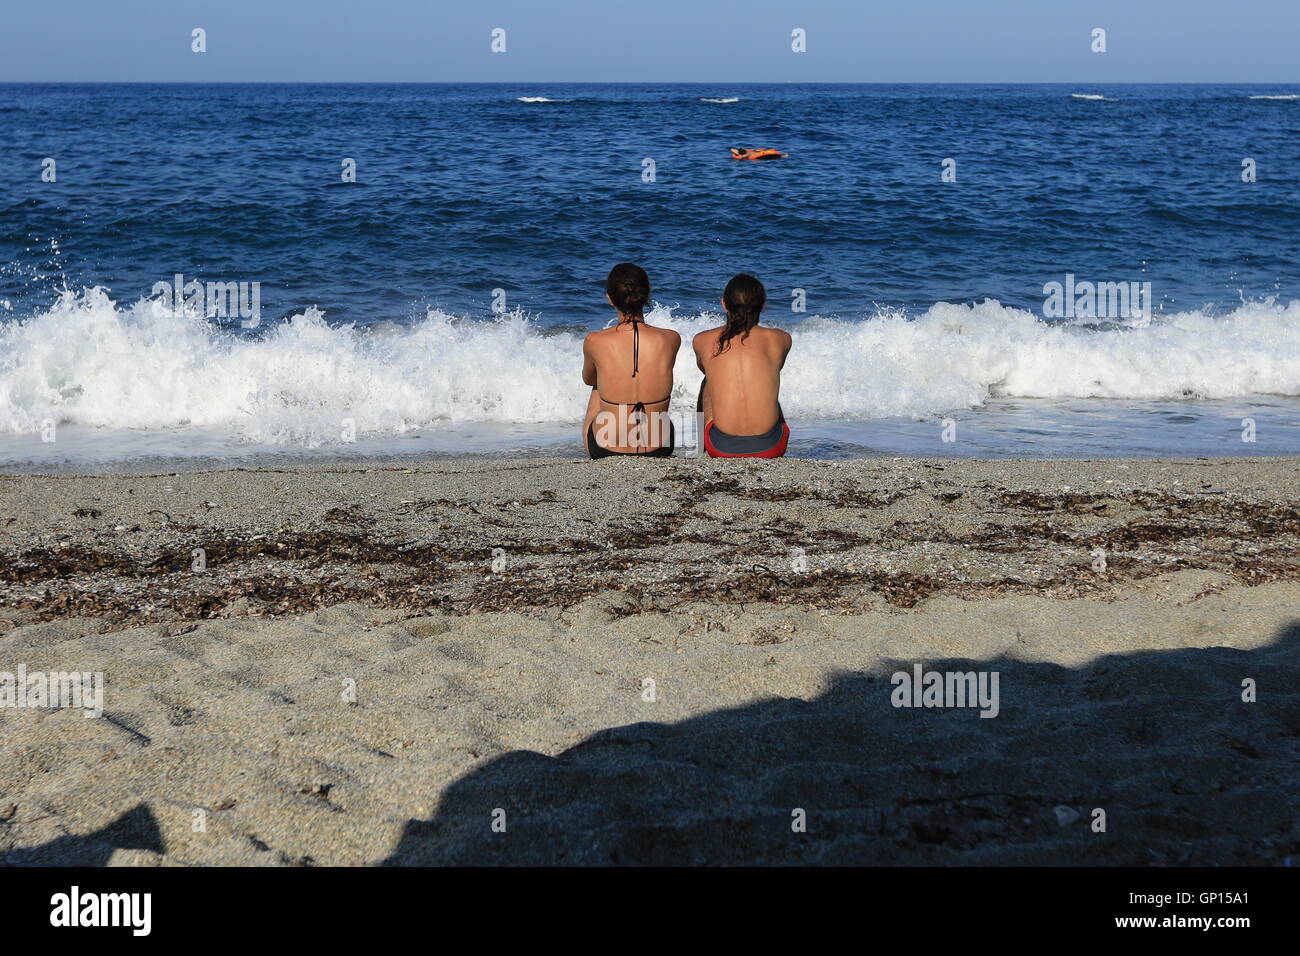 Un homme et une femme s'est assise dans le sable sur une plage dans la région de Pélion, Grèce. Banque D'Images